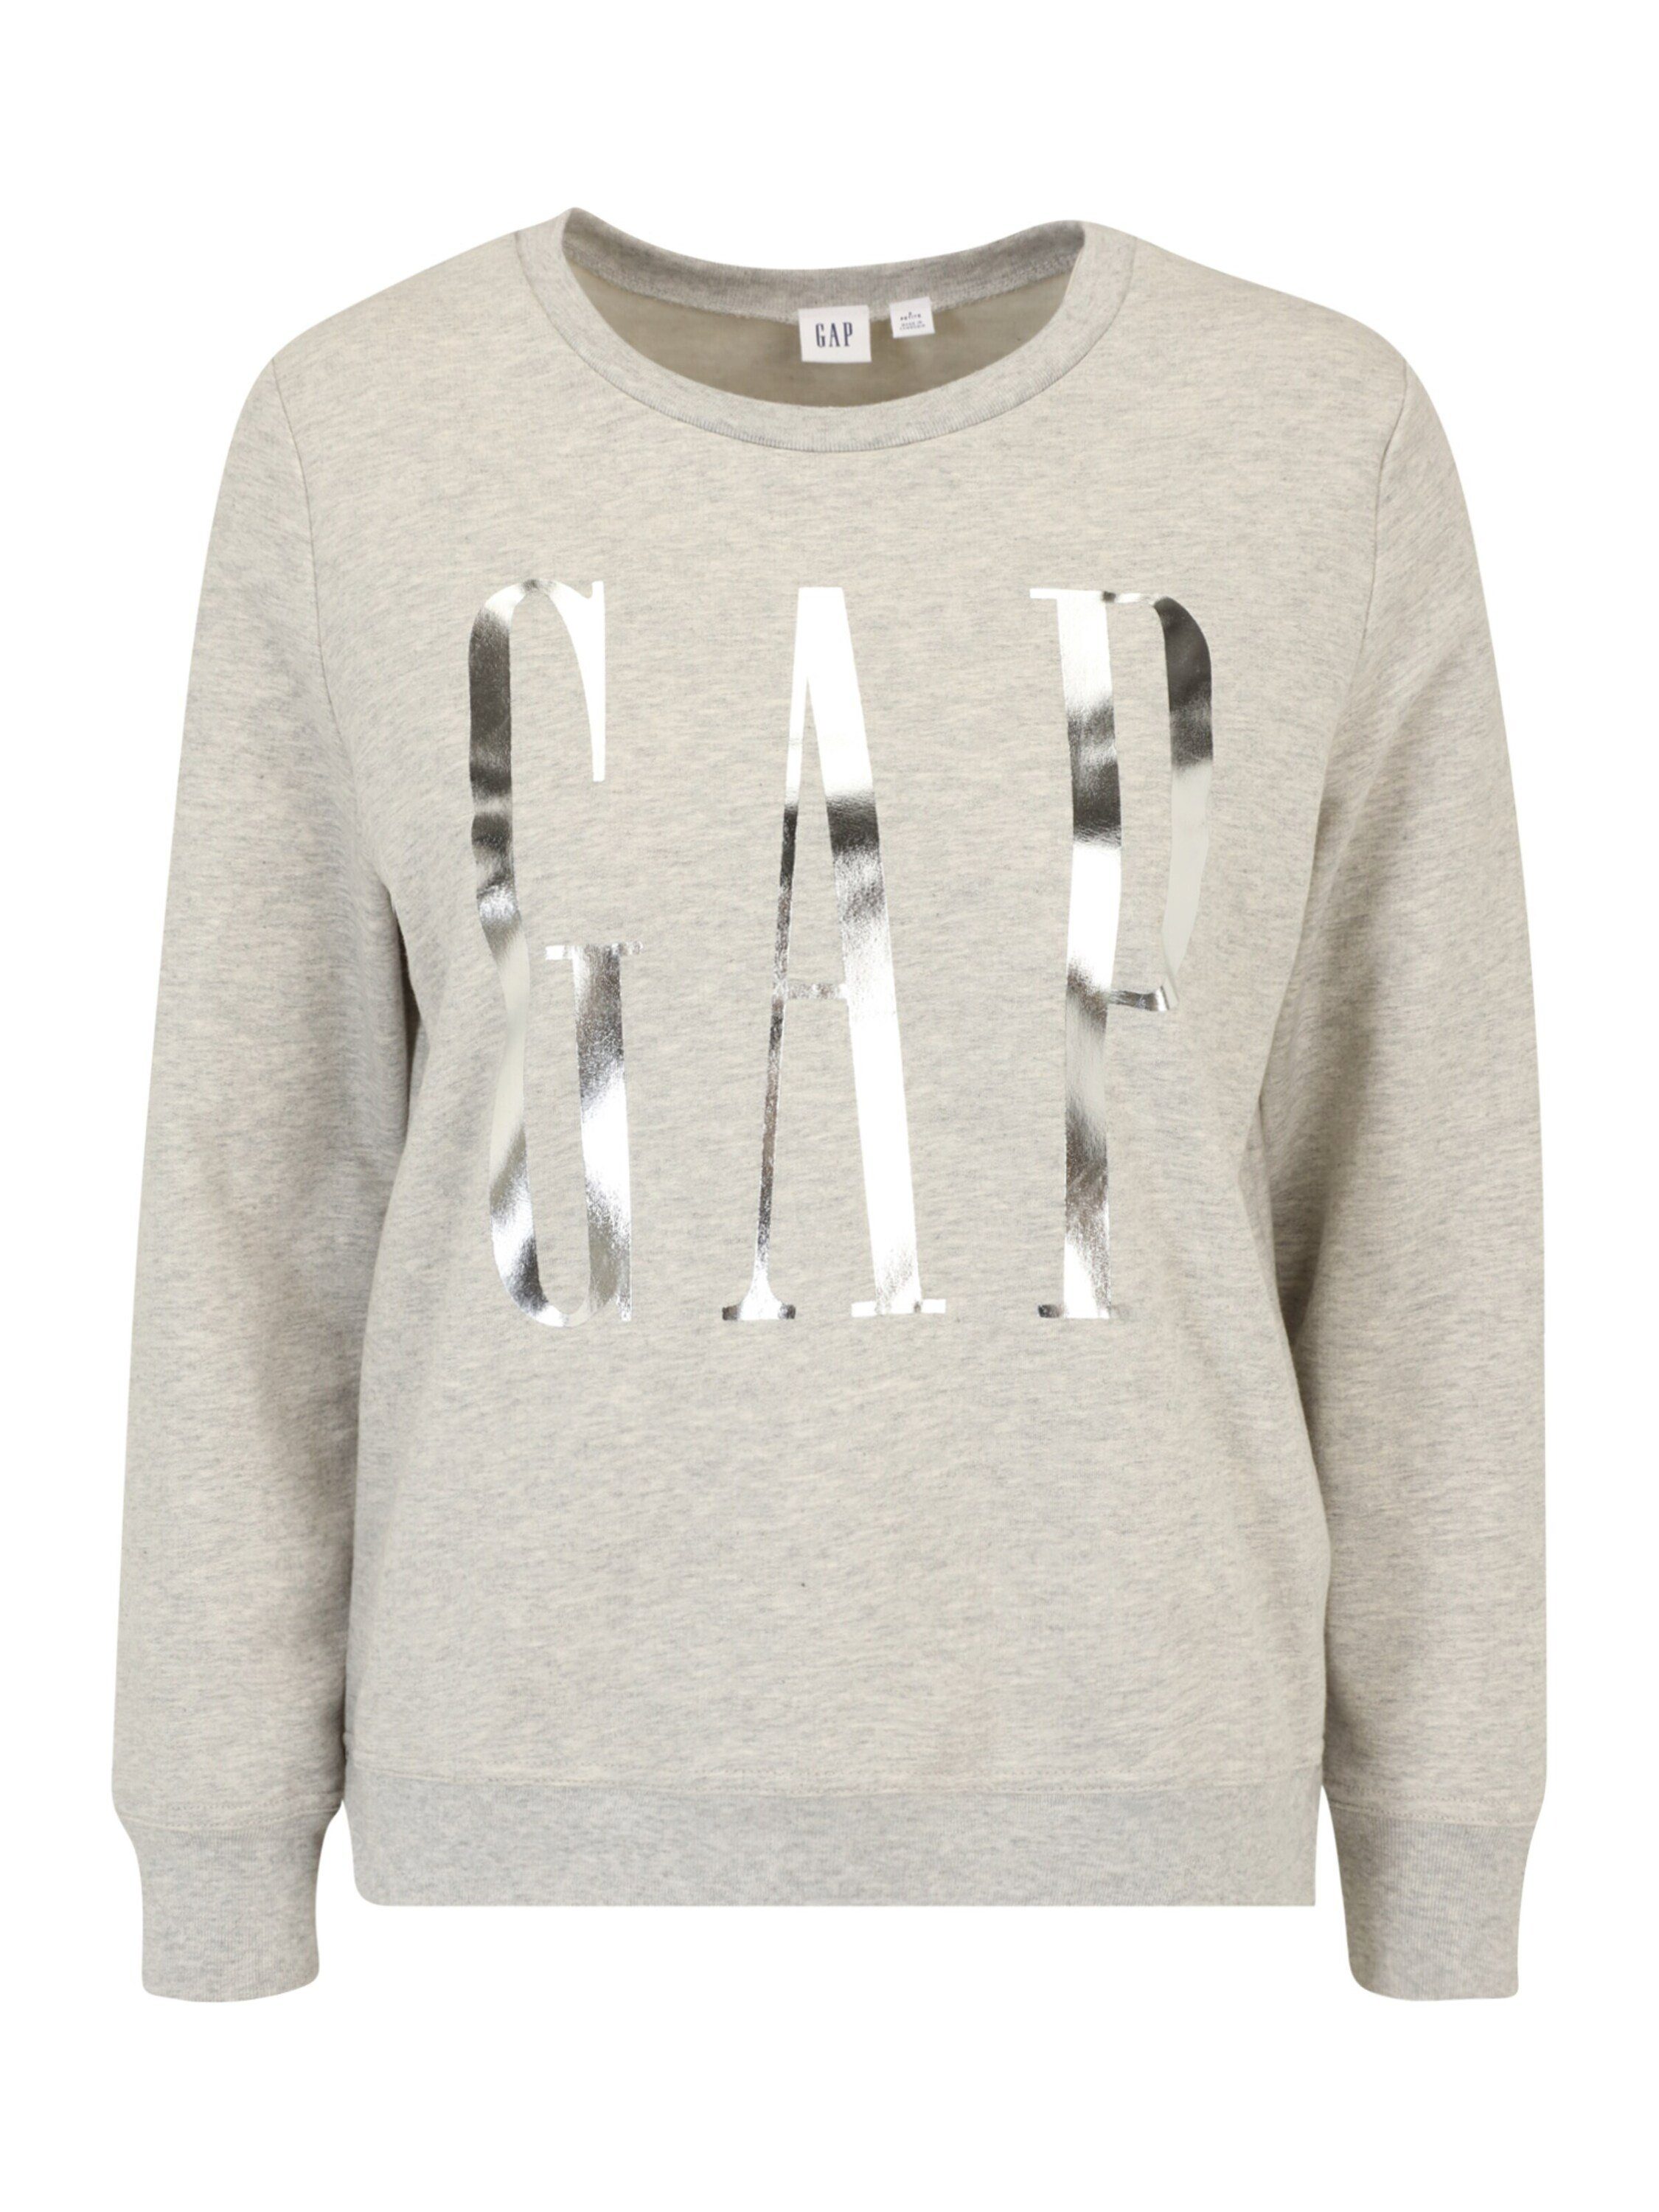 【Favorit】 Gap Petite Sweatshirt Details (1-tlg) Plain/ohne